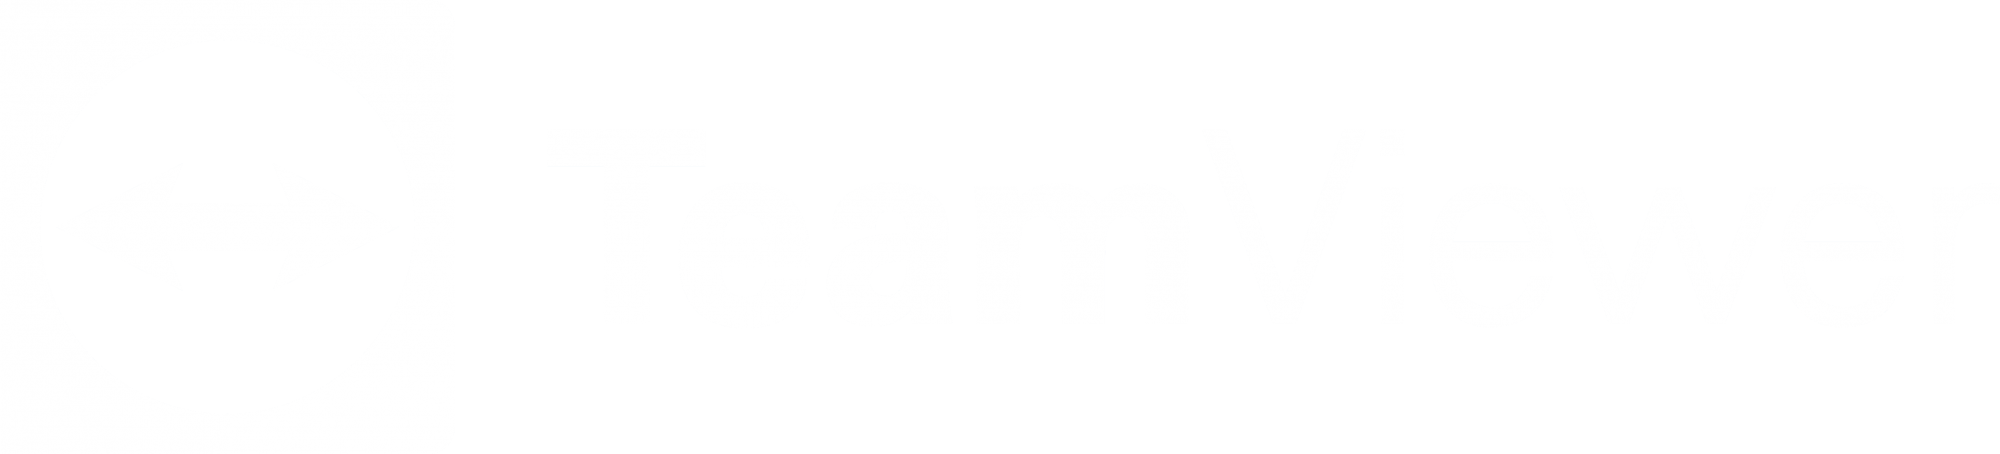 https://get.teamviewer.com/prodataplus